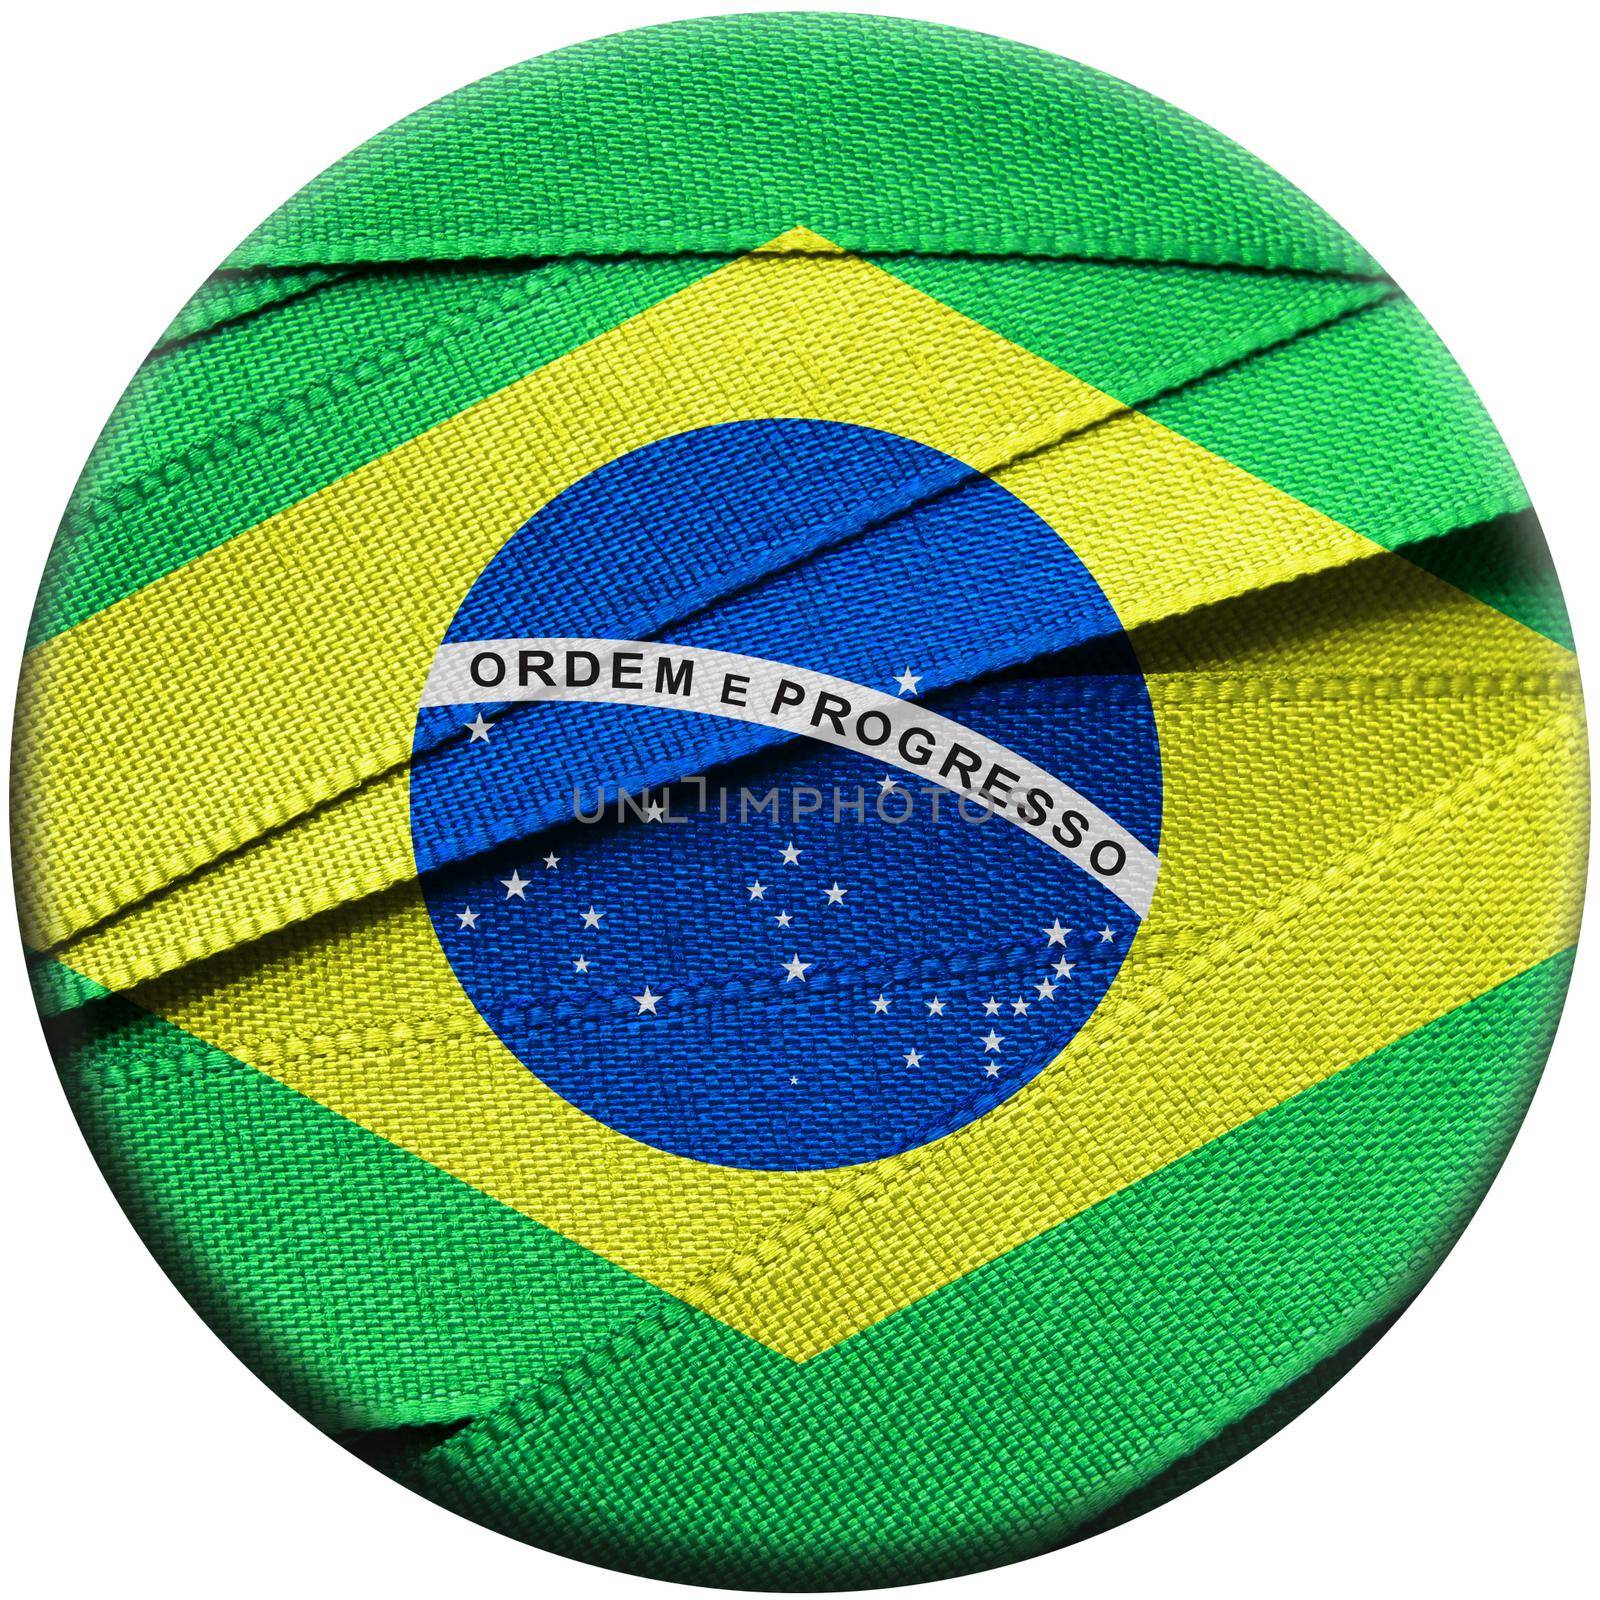 Brazil flag or banner by aroas